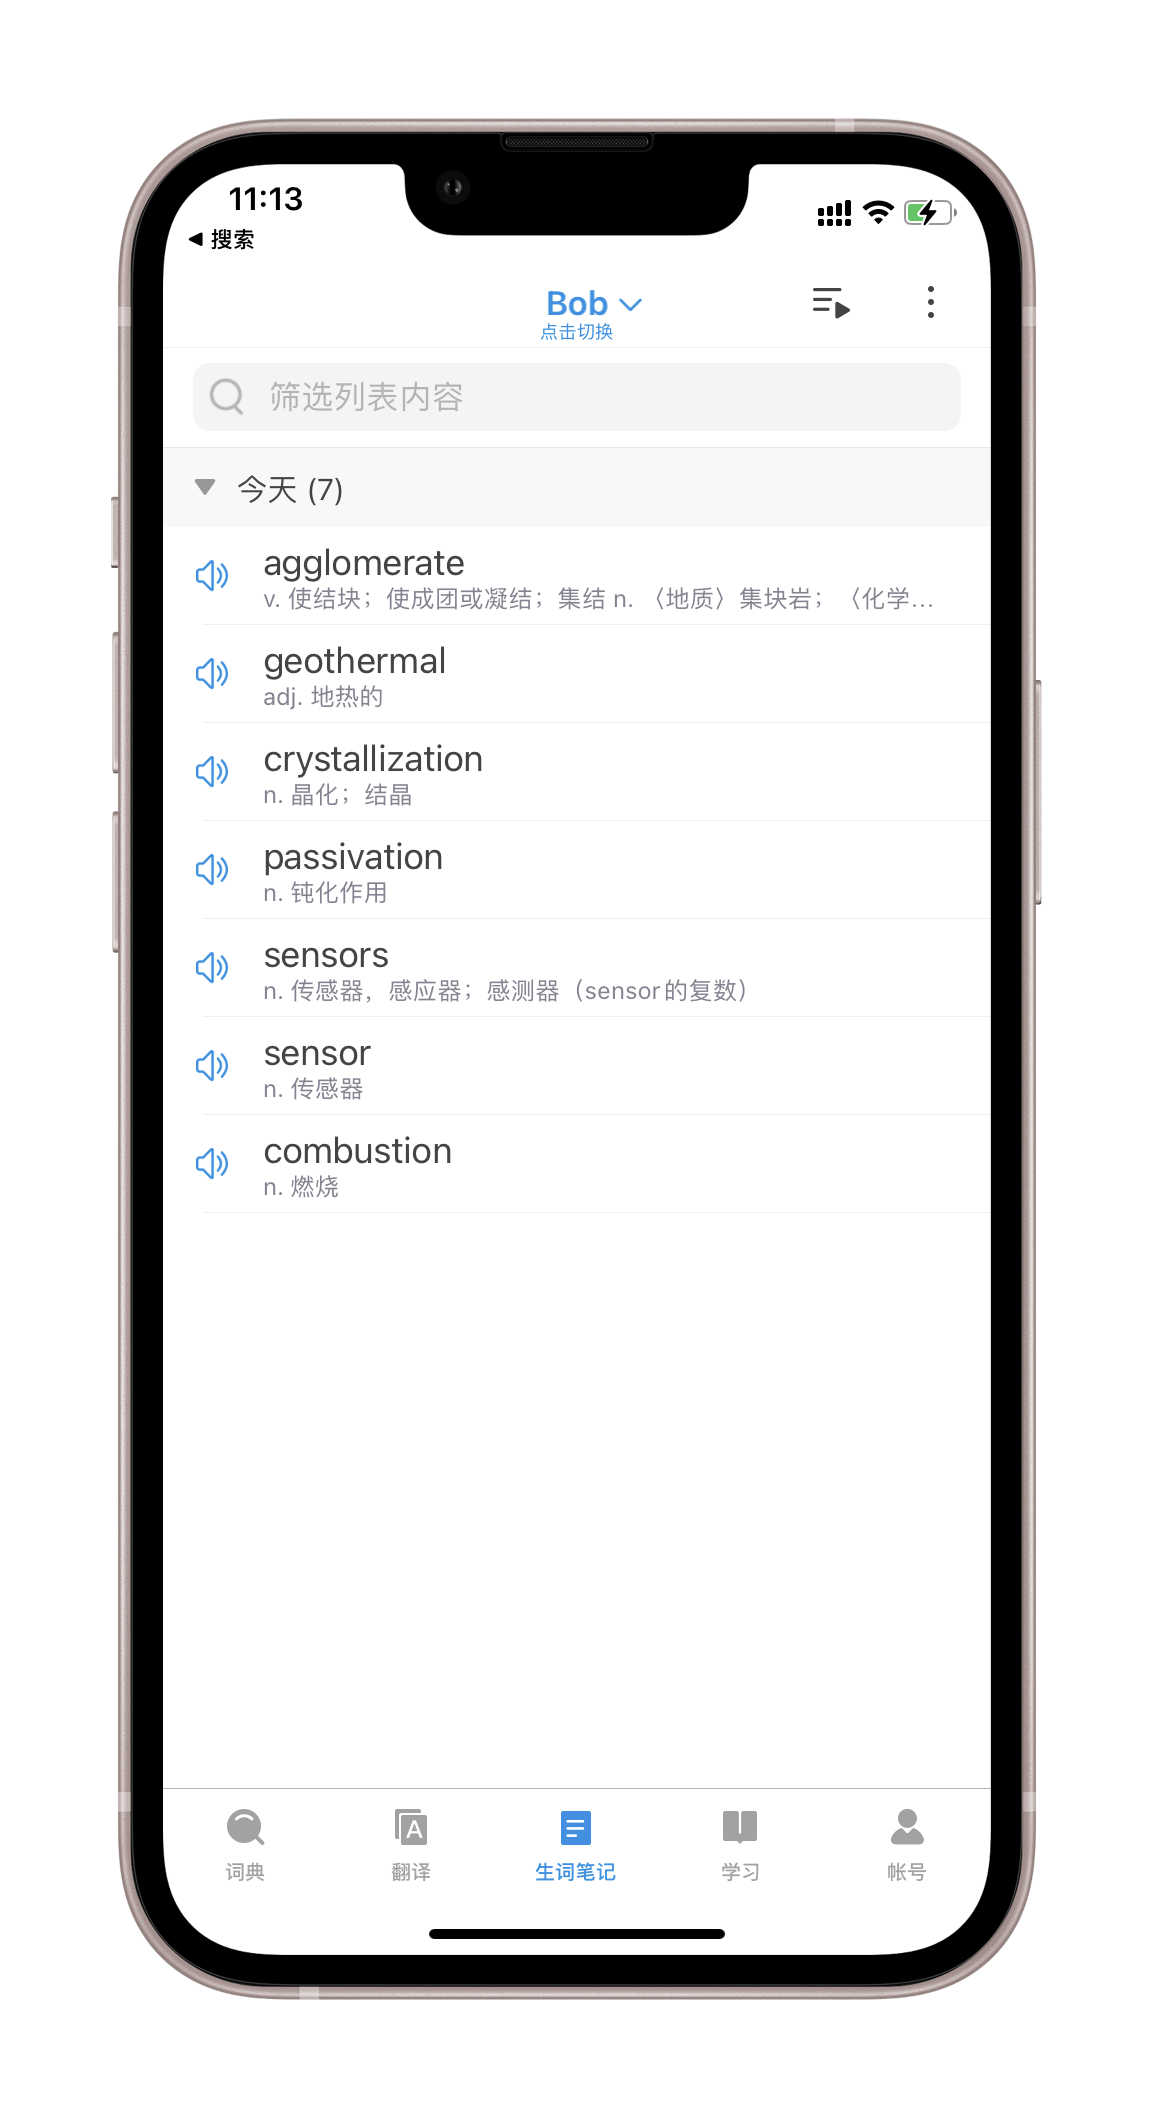 欧陆词典 iOS App - Bob 生词